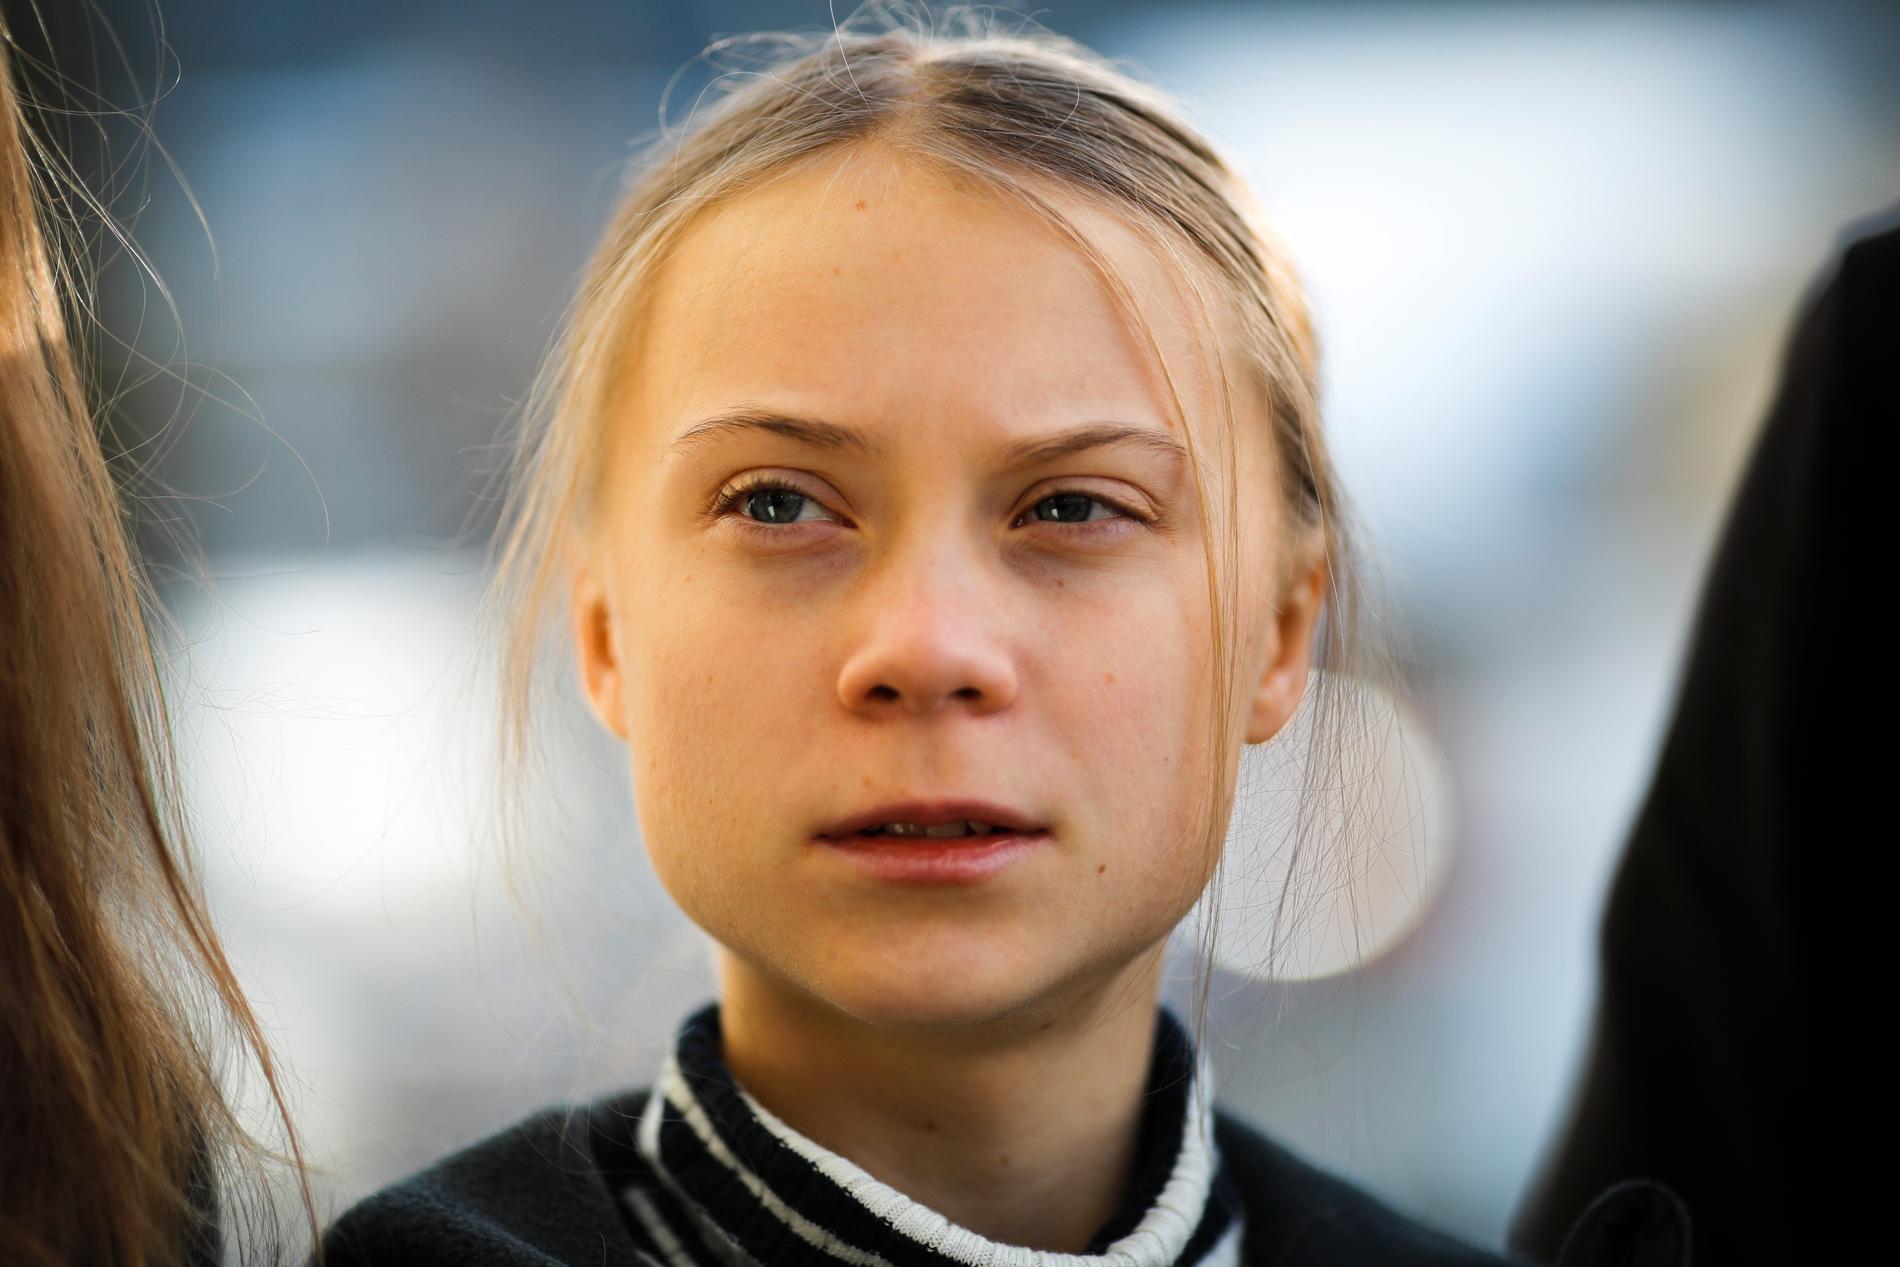 Greta Thunberg träffade flera världsledare i Davos, men vidhåller att klimatfrågan ignorerades under Världsekonomiskt forum.